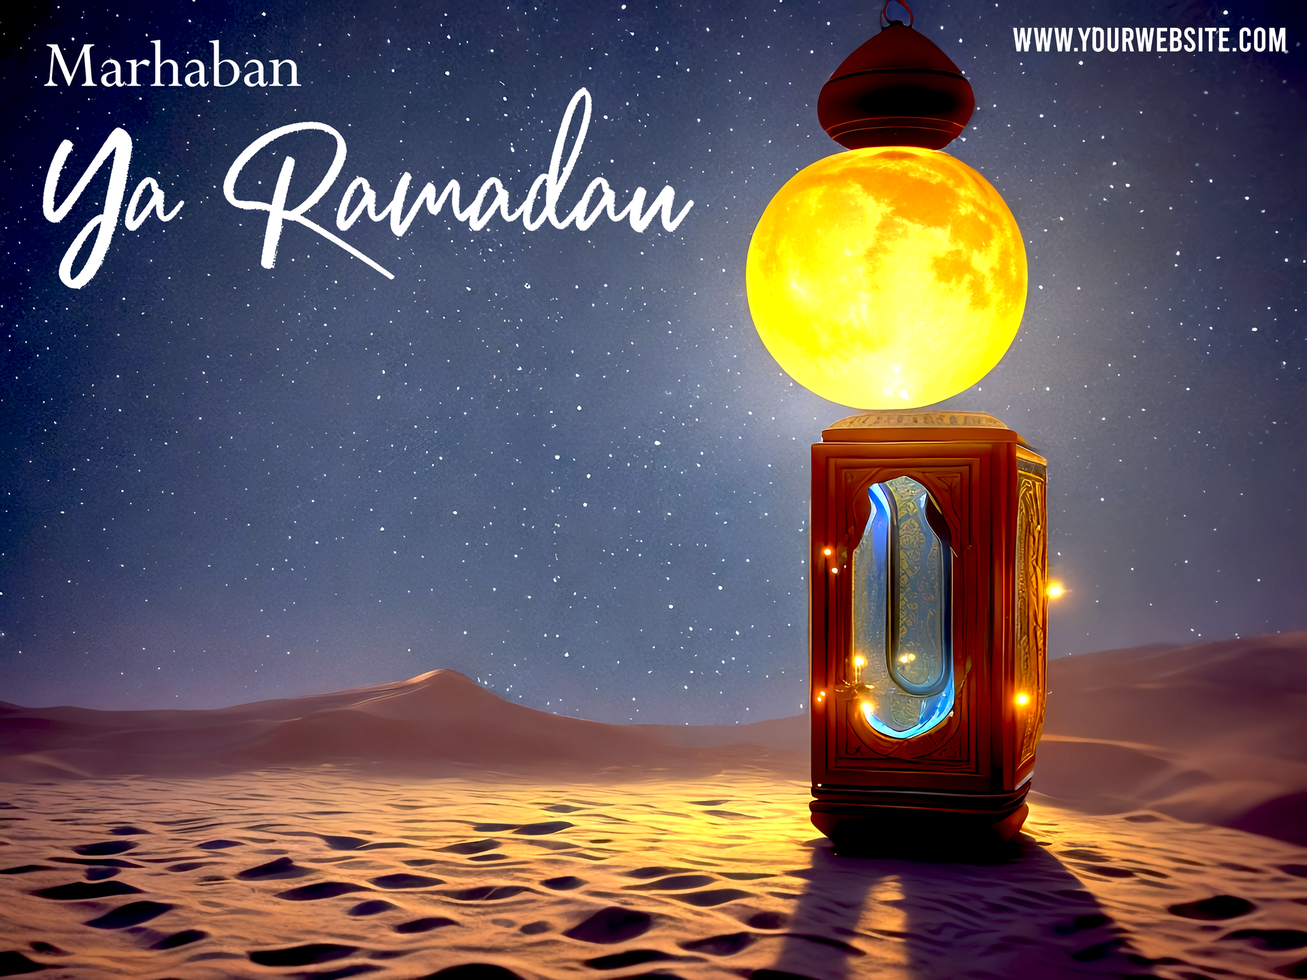 ramadan affisch med lykta i skön natt med crecent måne bild psd